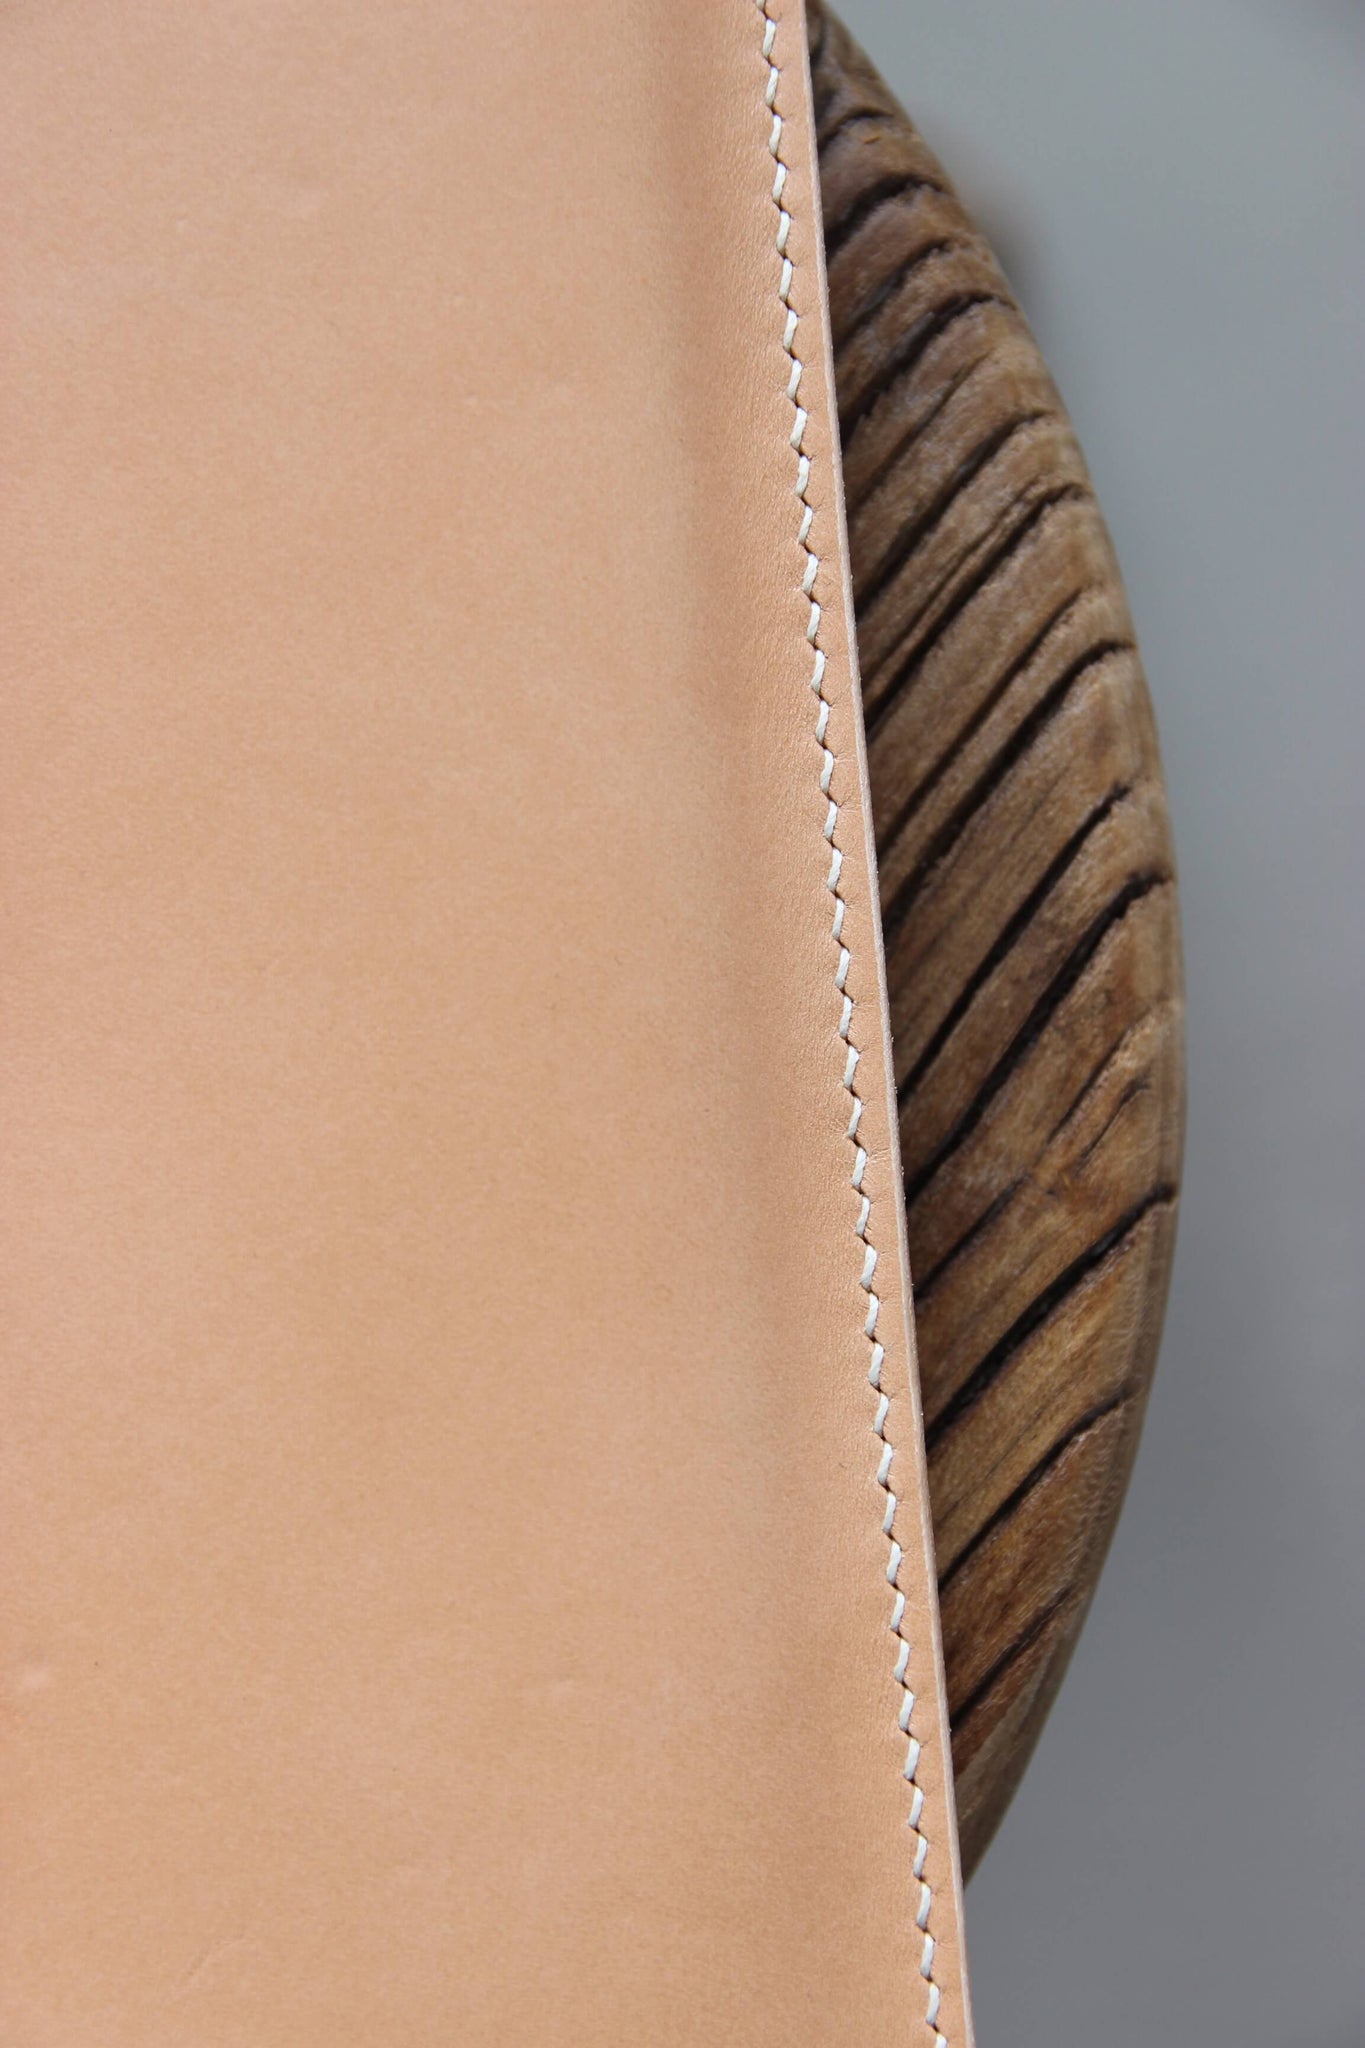 Detailaufnahme der Naht einer MacBook Hülle aus Leder in Natural auf einem Holzstuhl.